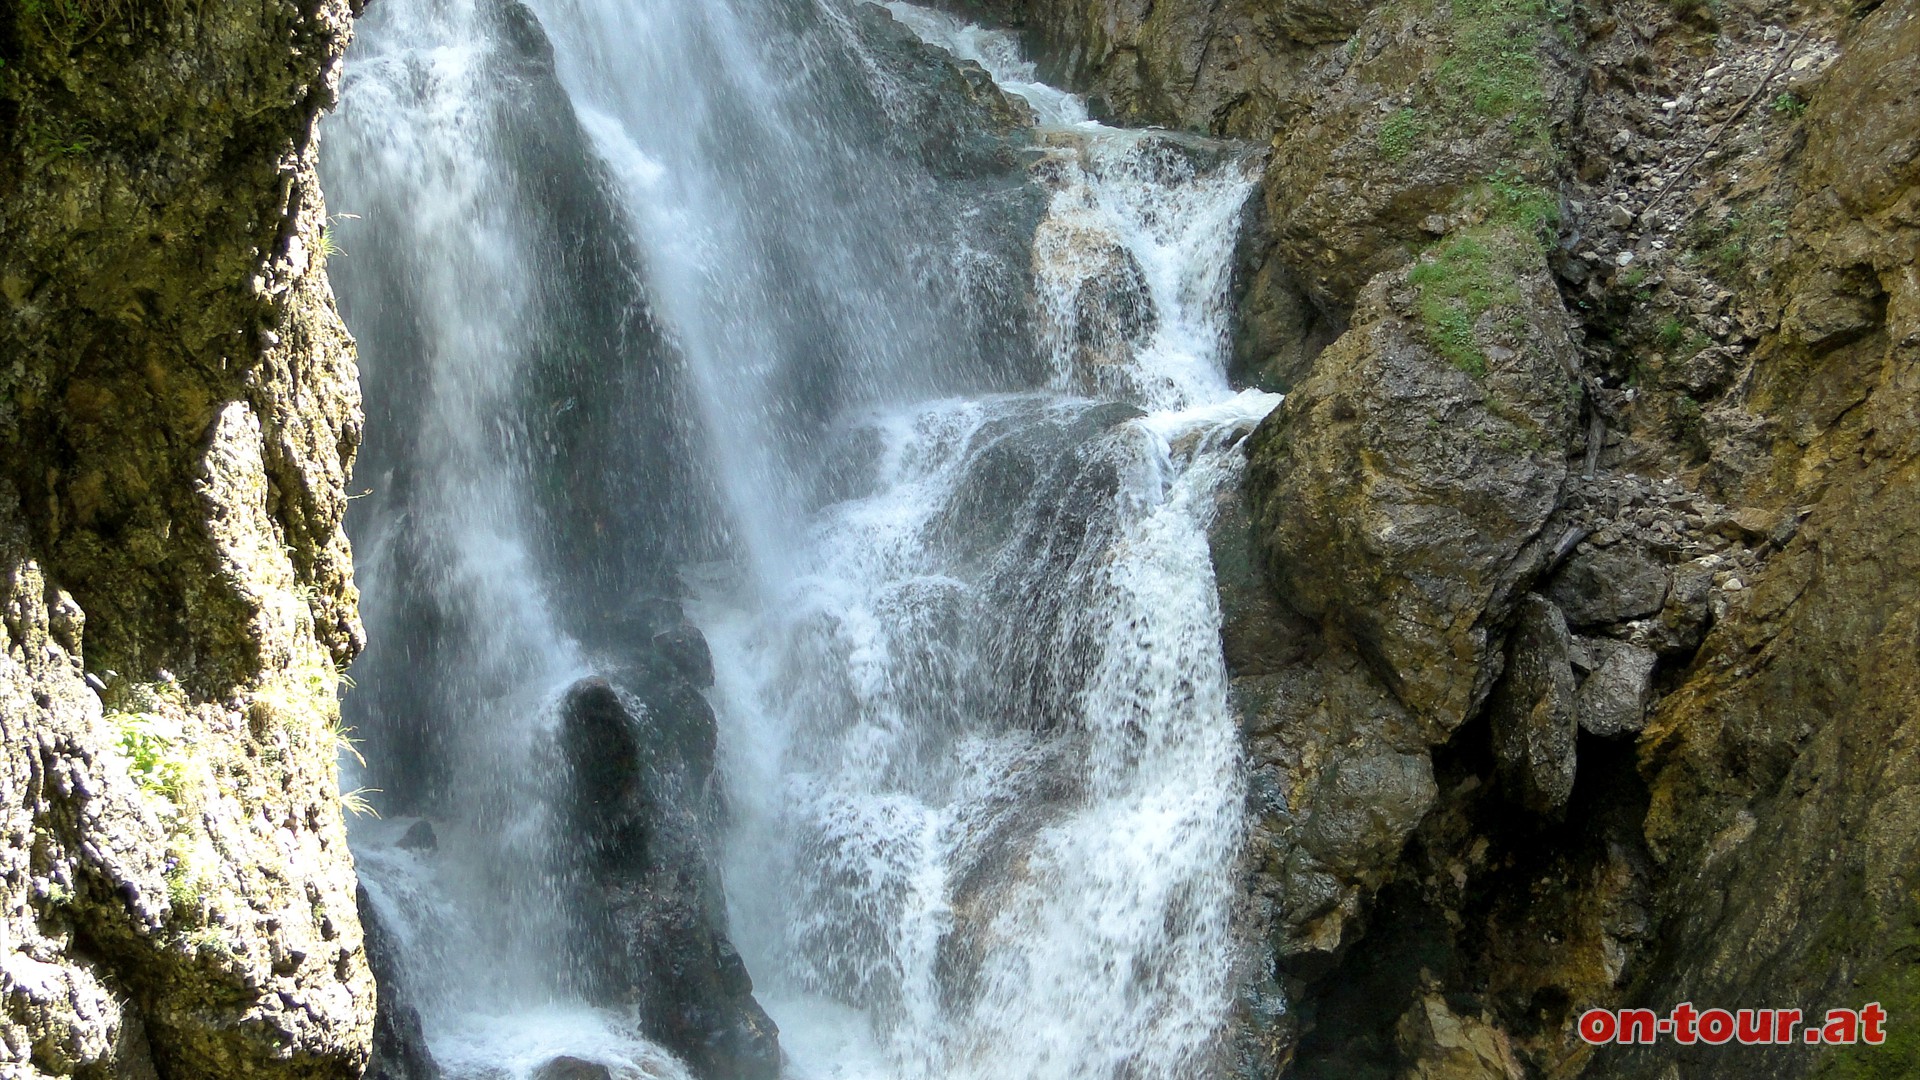 Nach der engen Schlucht prsentiert sich der zweite, 26 Meter hohe, tosende Wasserfall.